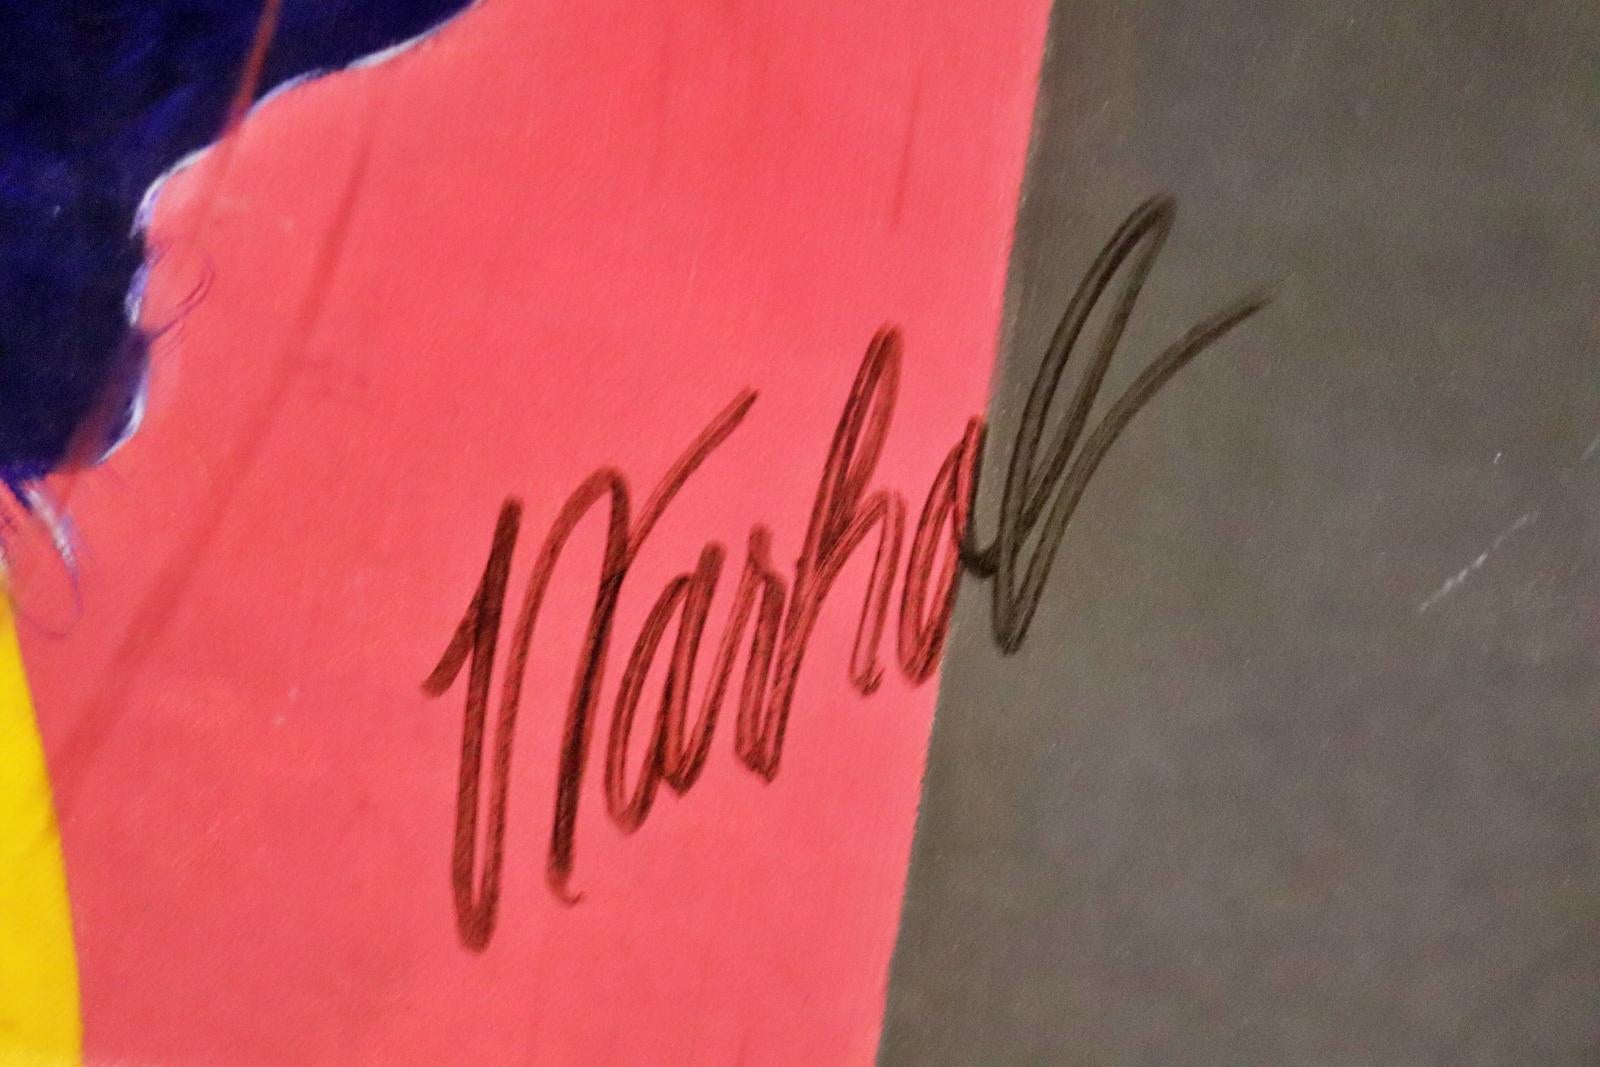 Signed Warhol lower middle. Framed measures 49 5/8